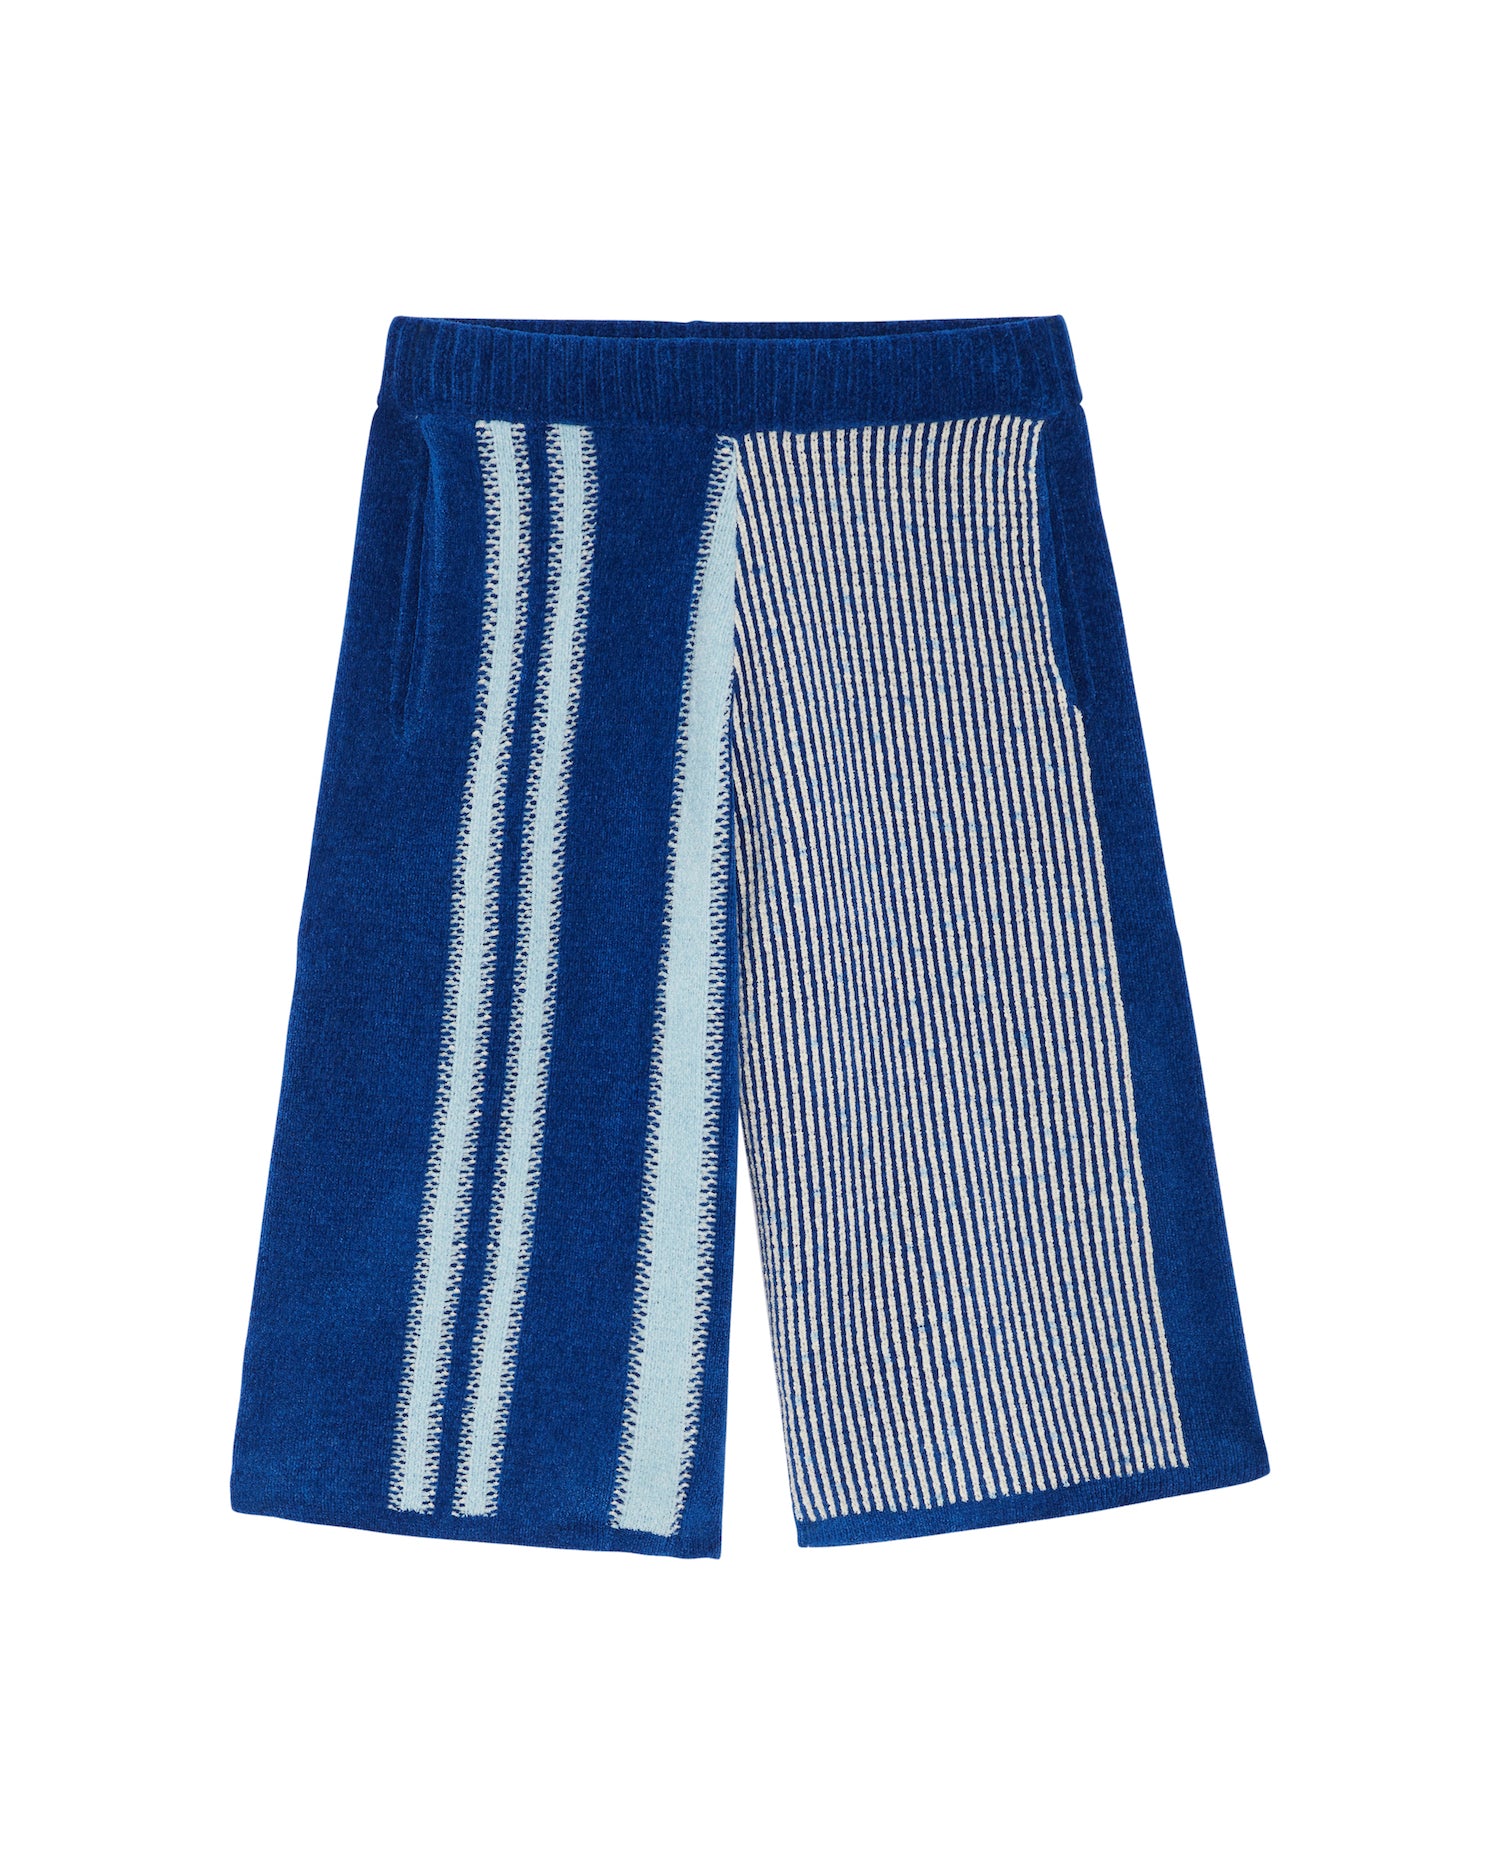 Louis Vuitton Bandana Board Swim Shorts Blue/White Men's - SS22